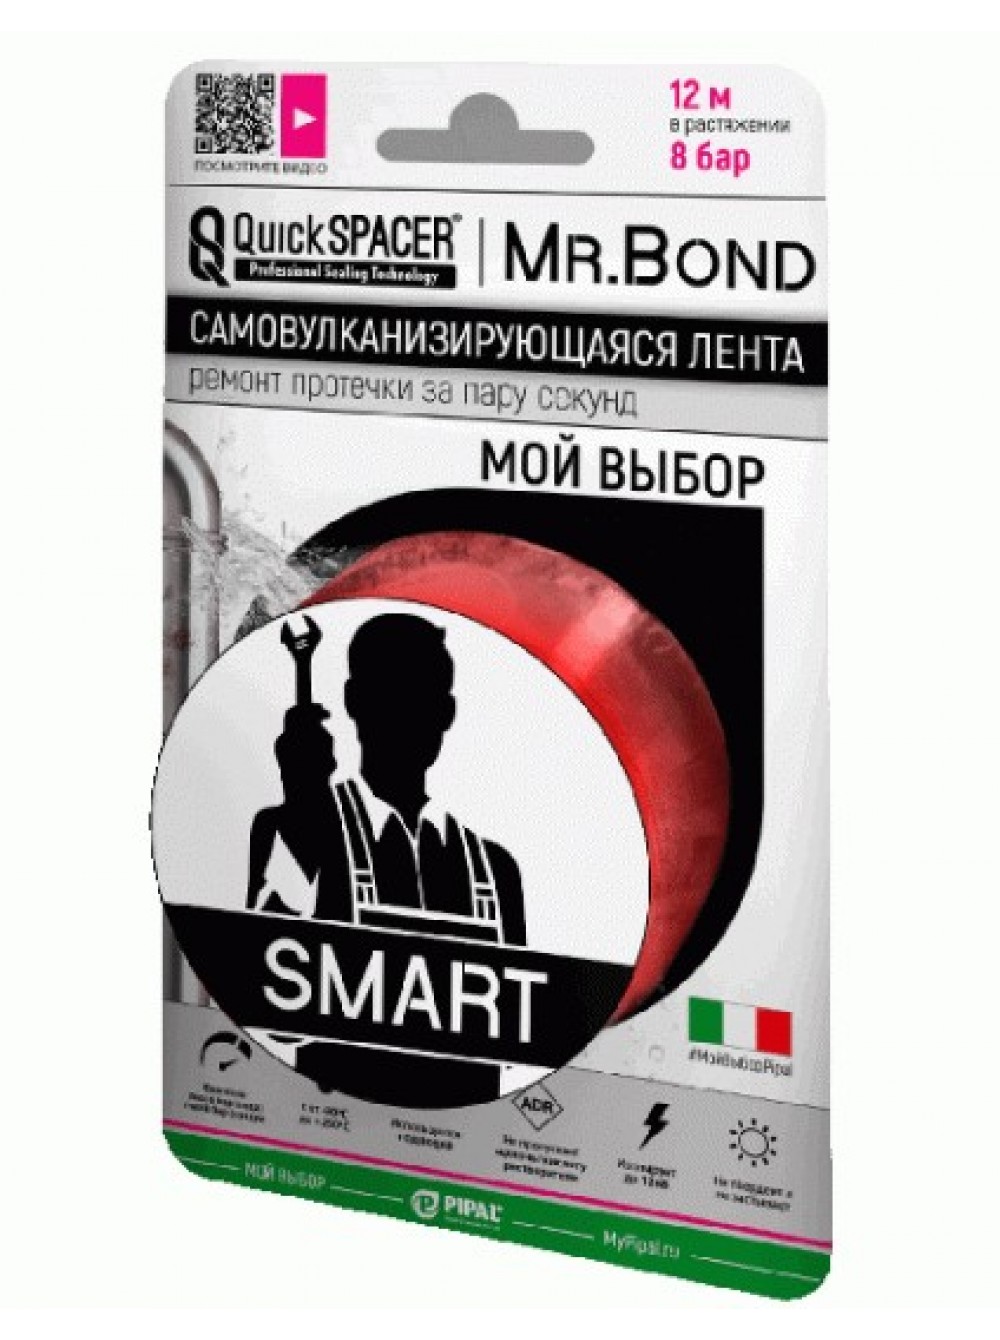 Лента силиконовая самосклеивающаяся 25.4ммx3мx0,5мм QuickSPACER Mr.Bond Smart красная